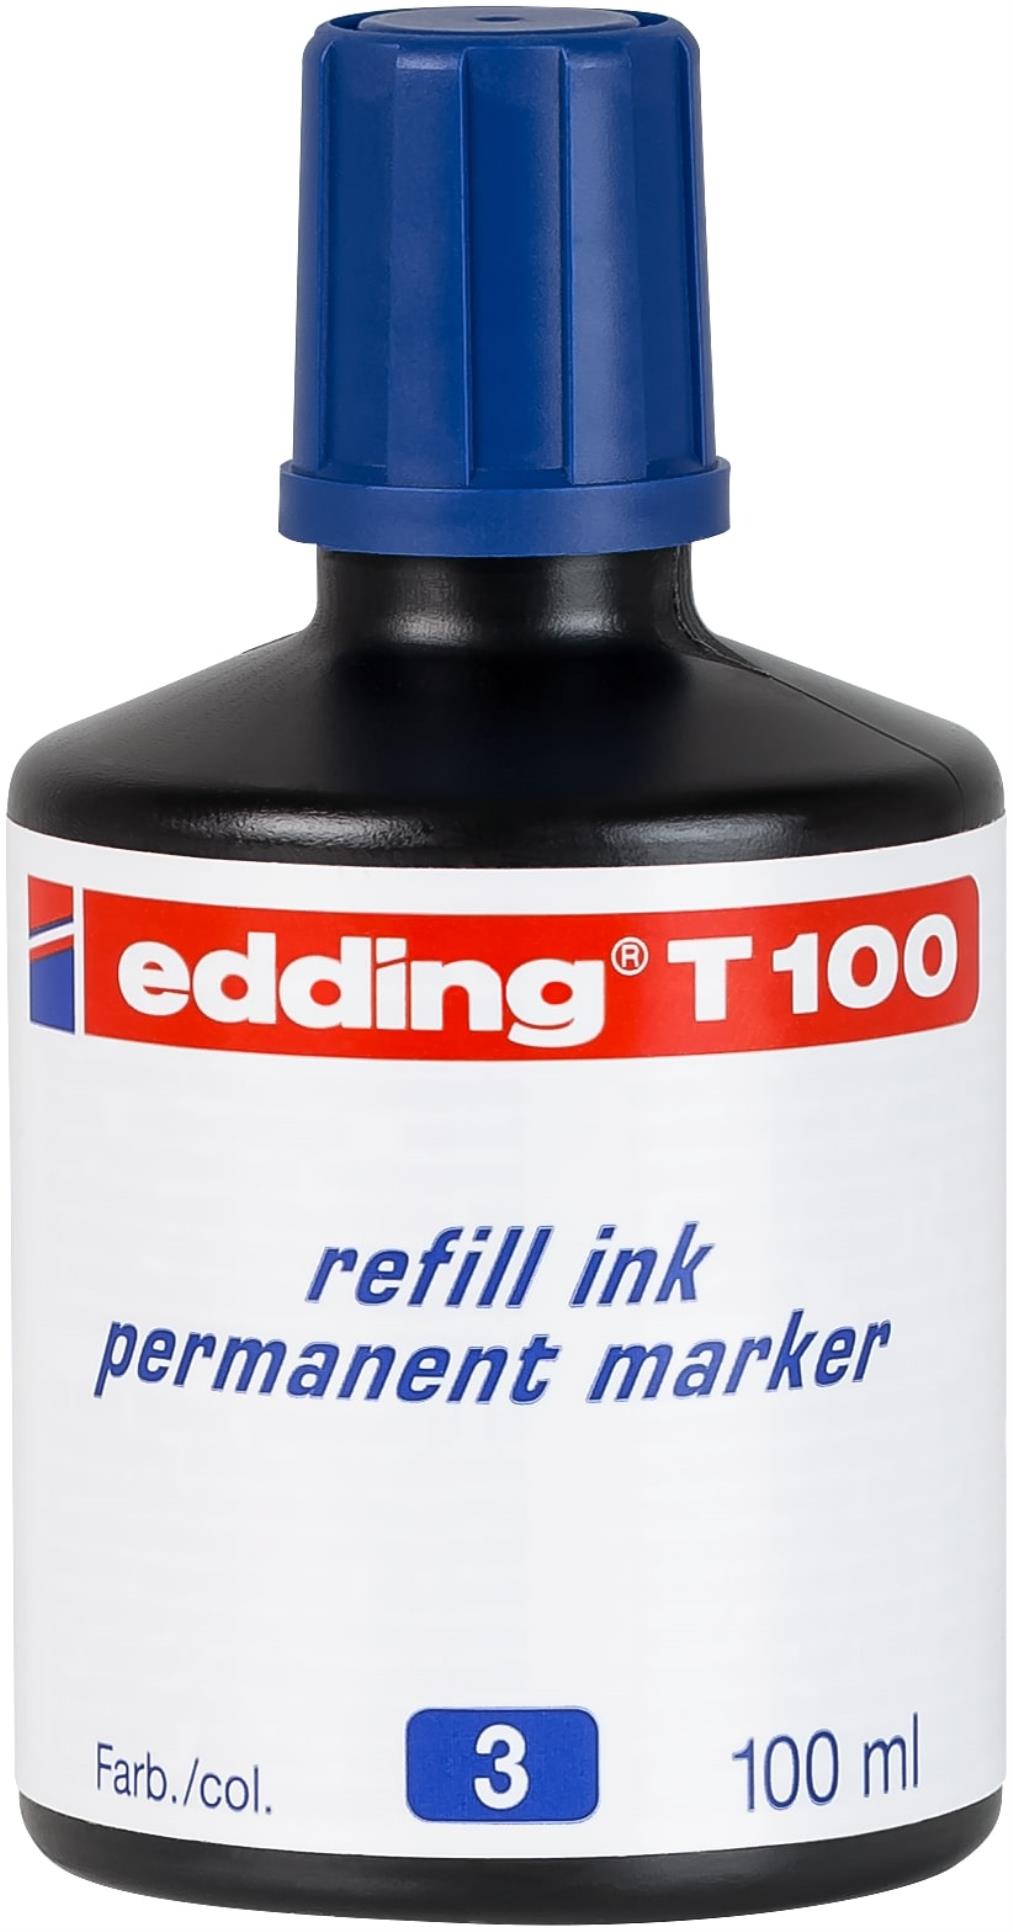 Náhradní permanentní inkoust edding T100 - modrý, 100 ml